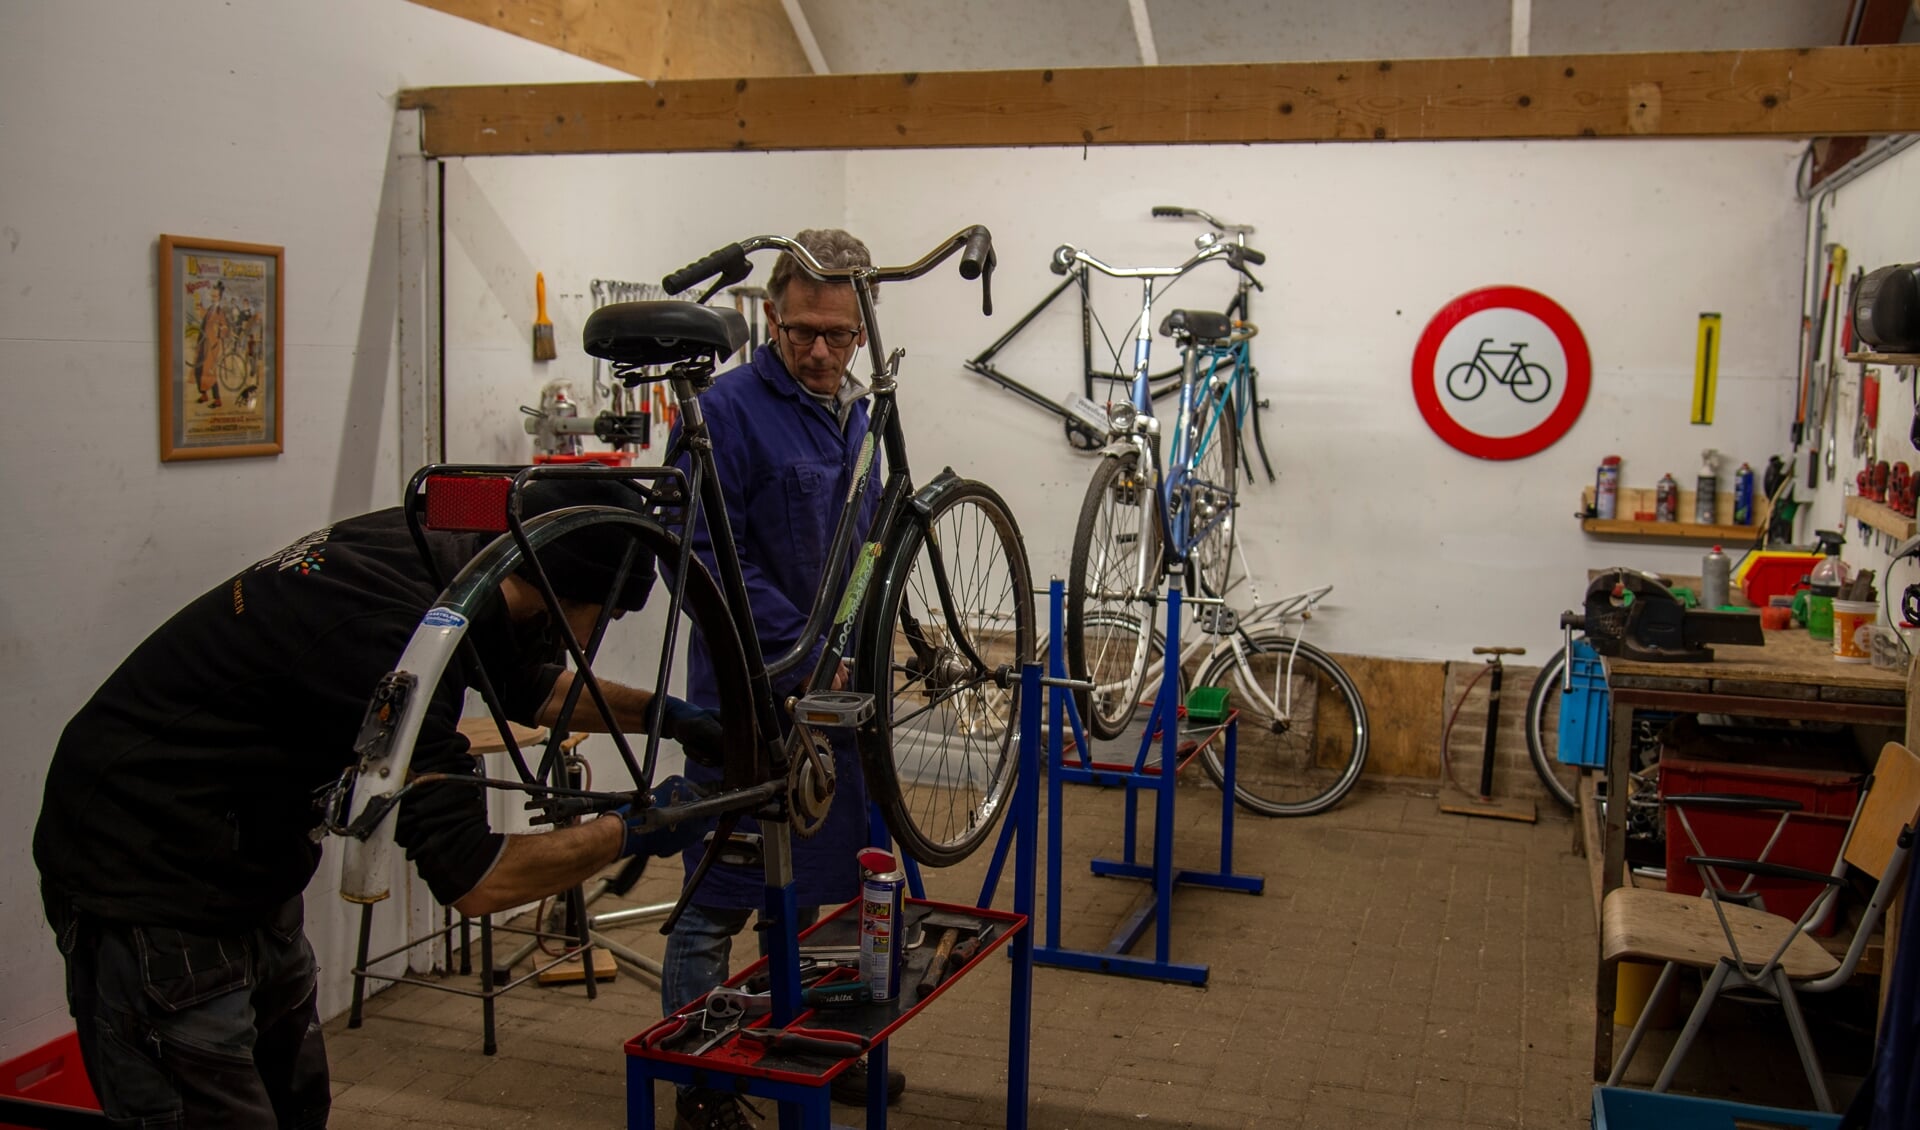 Deze fiets wordt nu opgeknapt met diverse onderdelen in de werkplaats. Foto: Marion Verhaaf